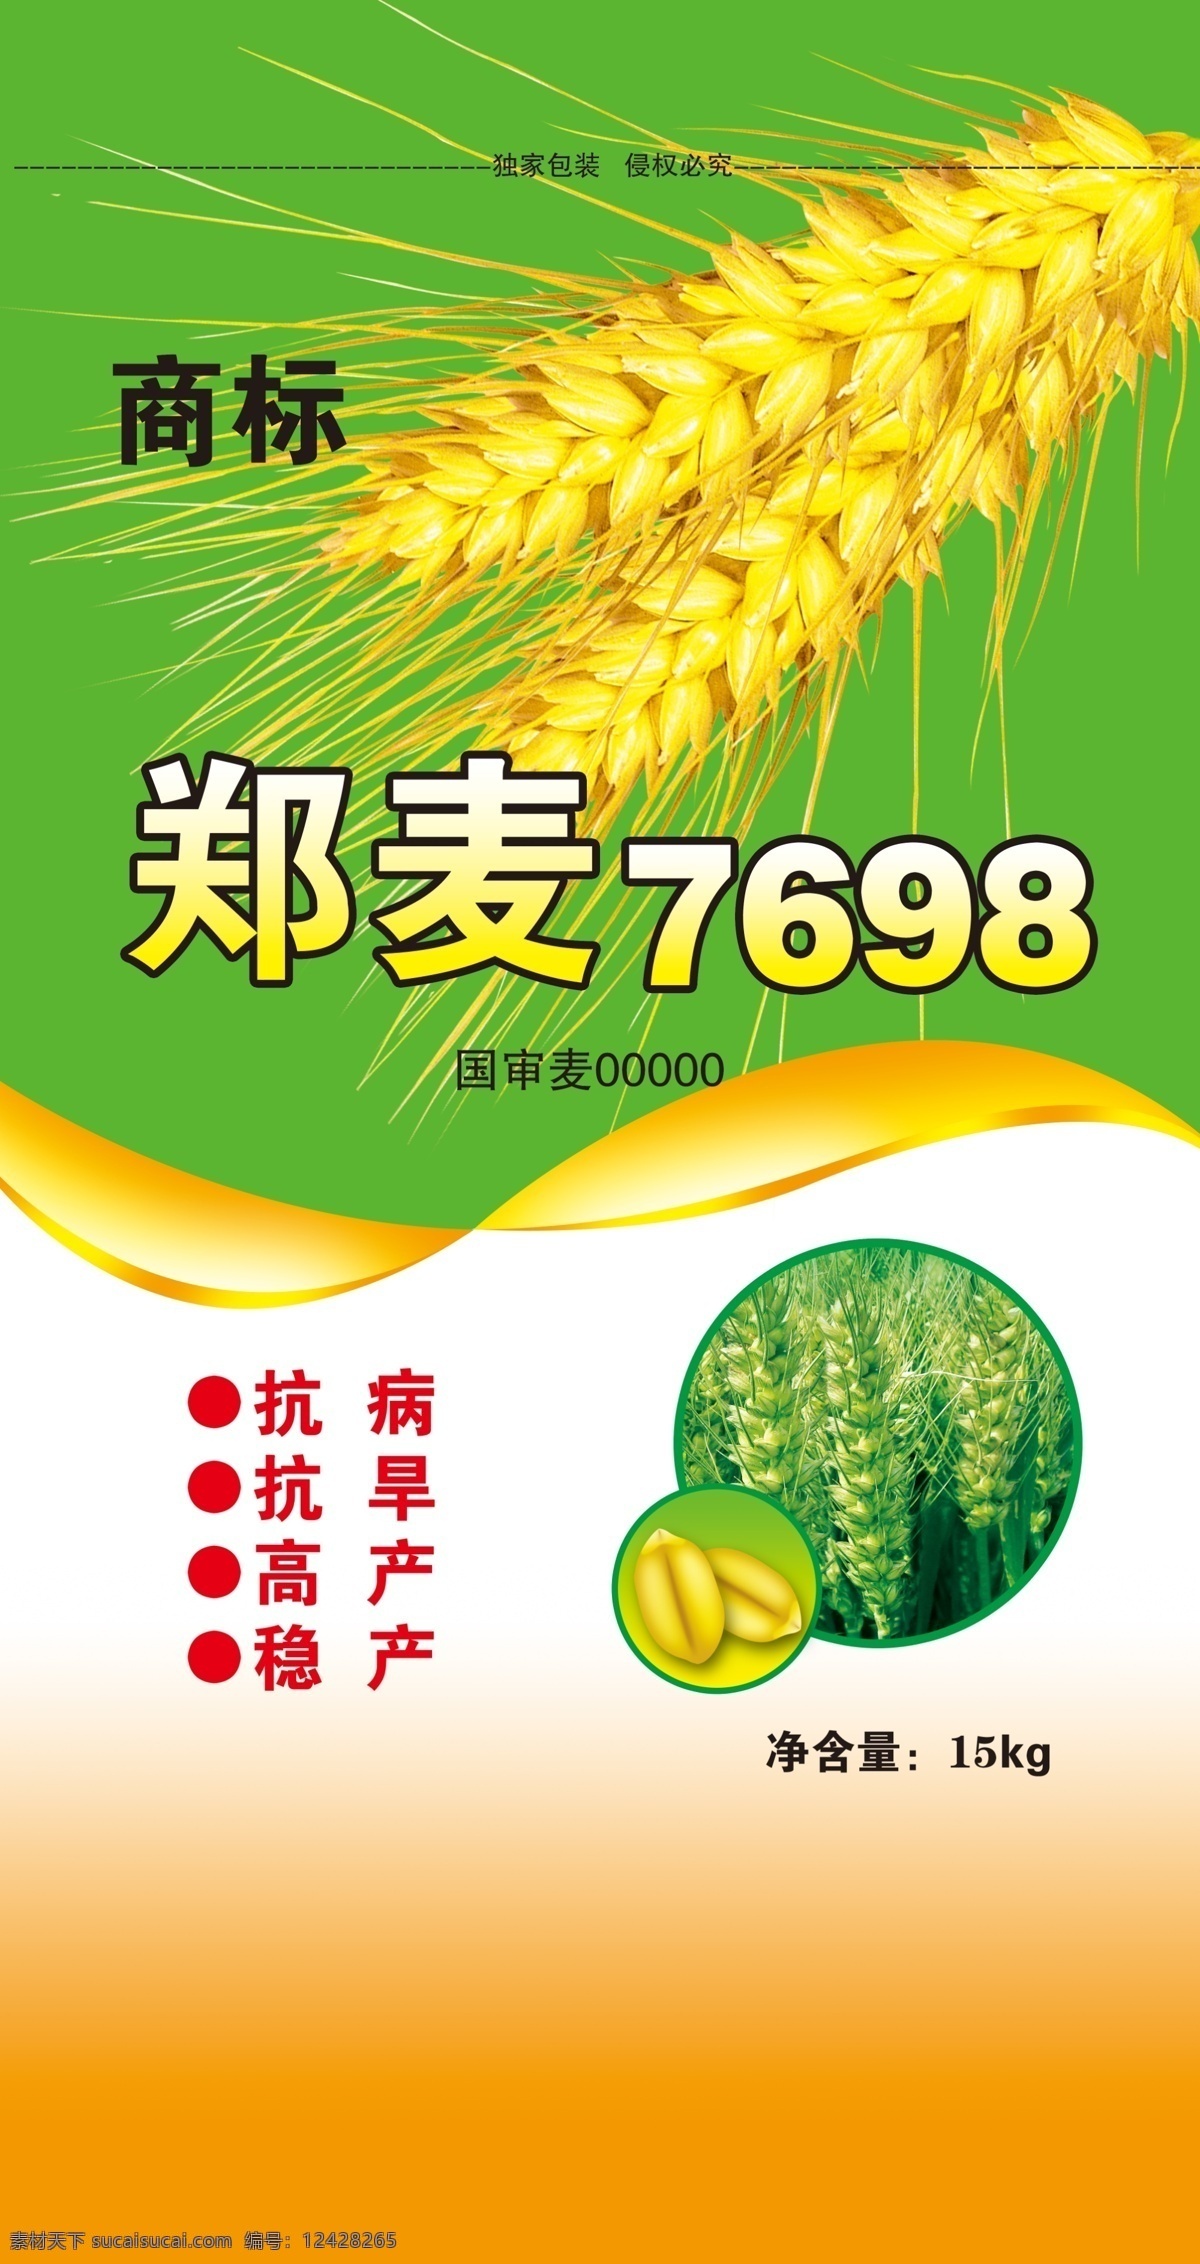 小麦包装 郑麦7698 小麦地 小麦粒 小麦穗 包装设计 广告设计模板 源文件 绿色